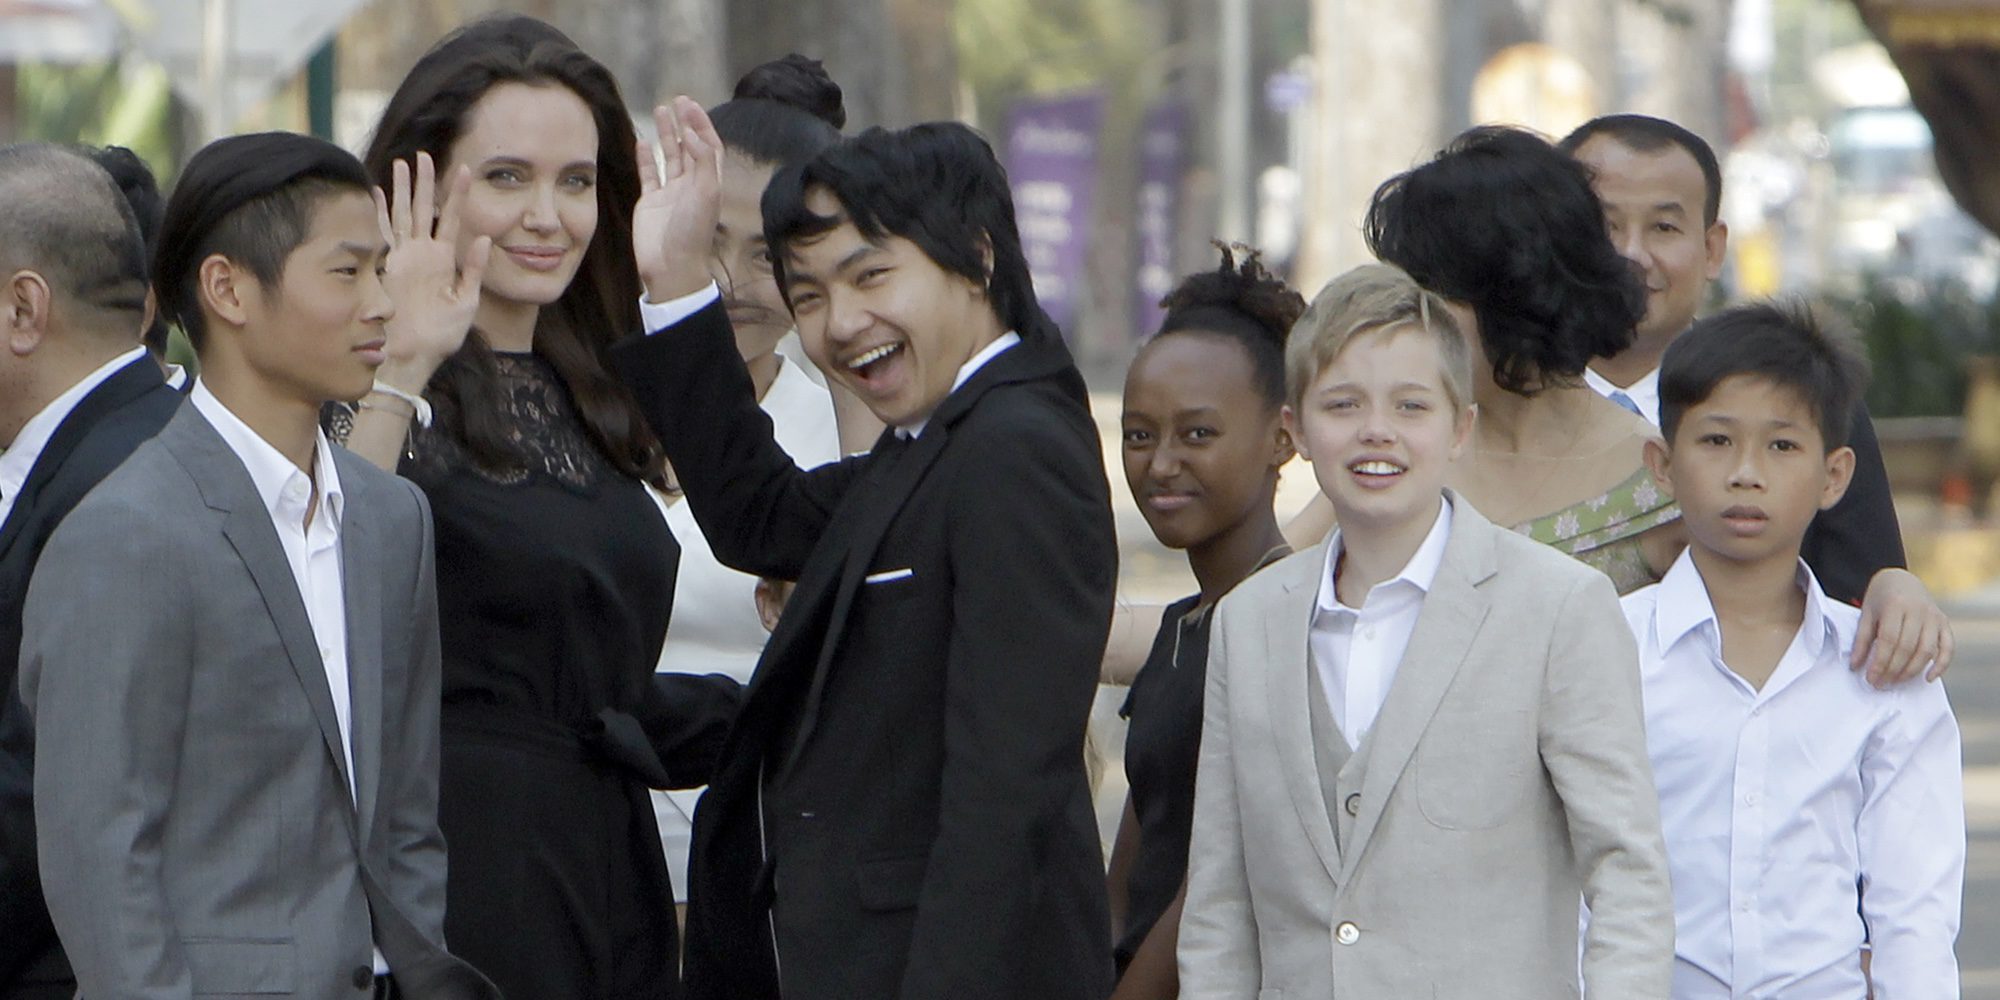 Angelina Jolie reaparece arropada por sus seis hijos en Camboya tras el divorcio de Brad Pitt